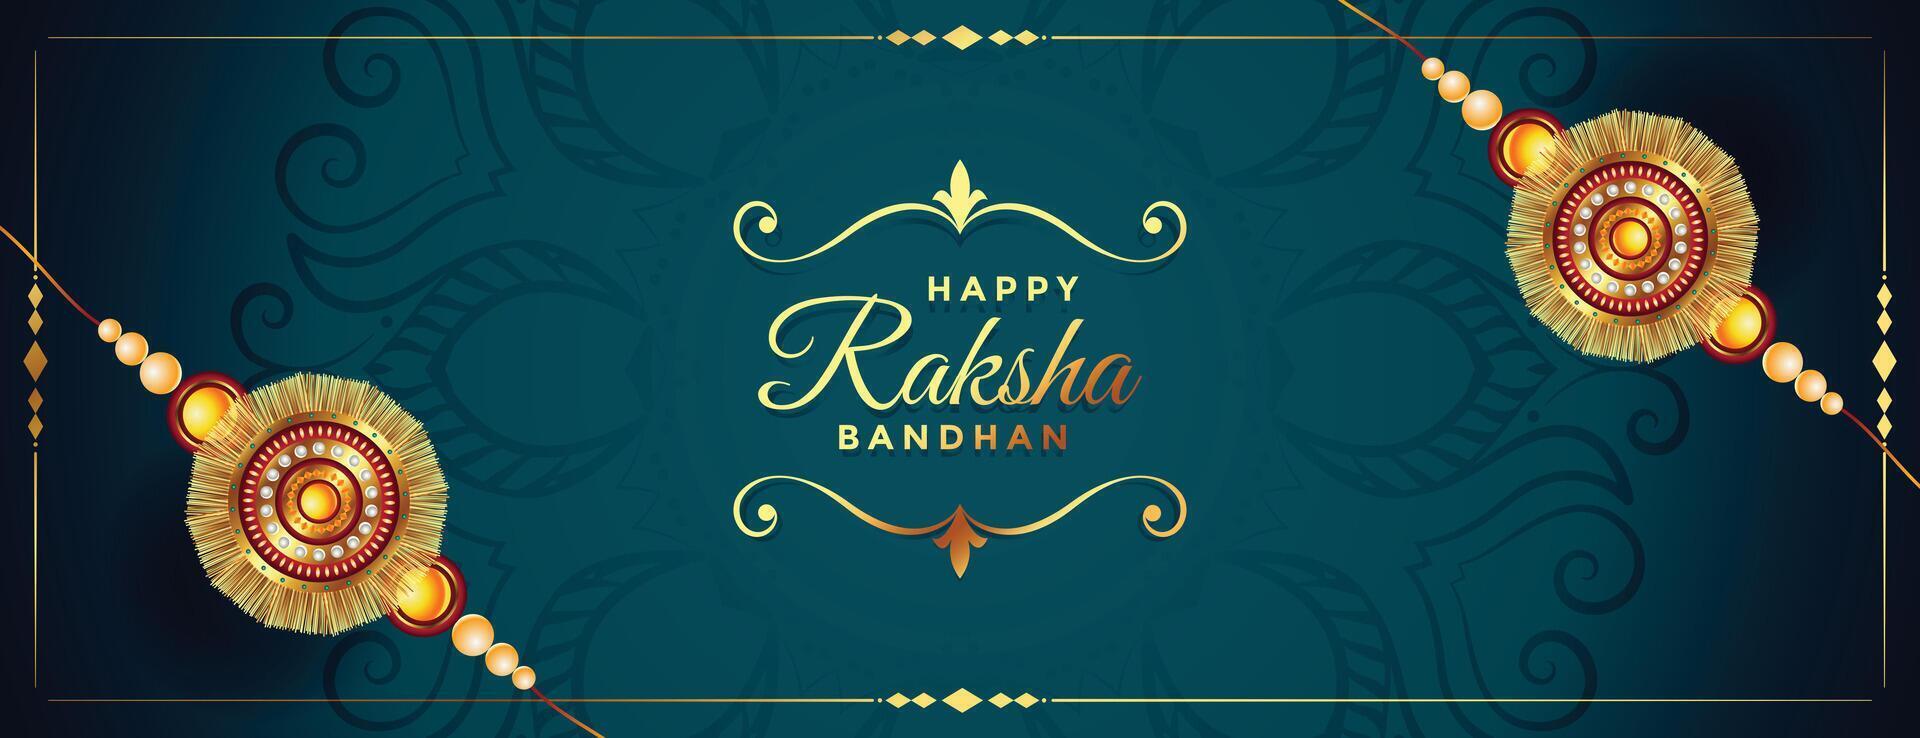 beautiful rakhi banner for happy raksha bandhan vector